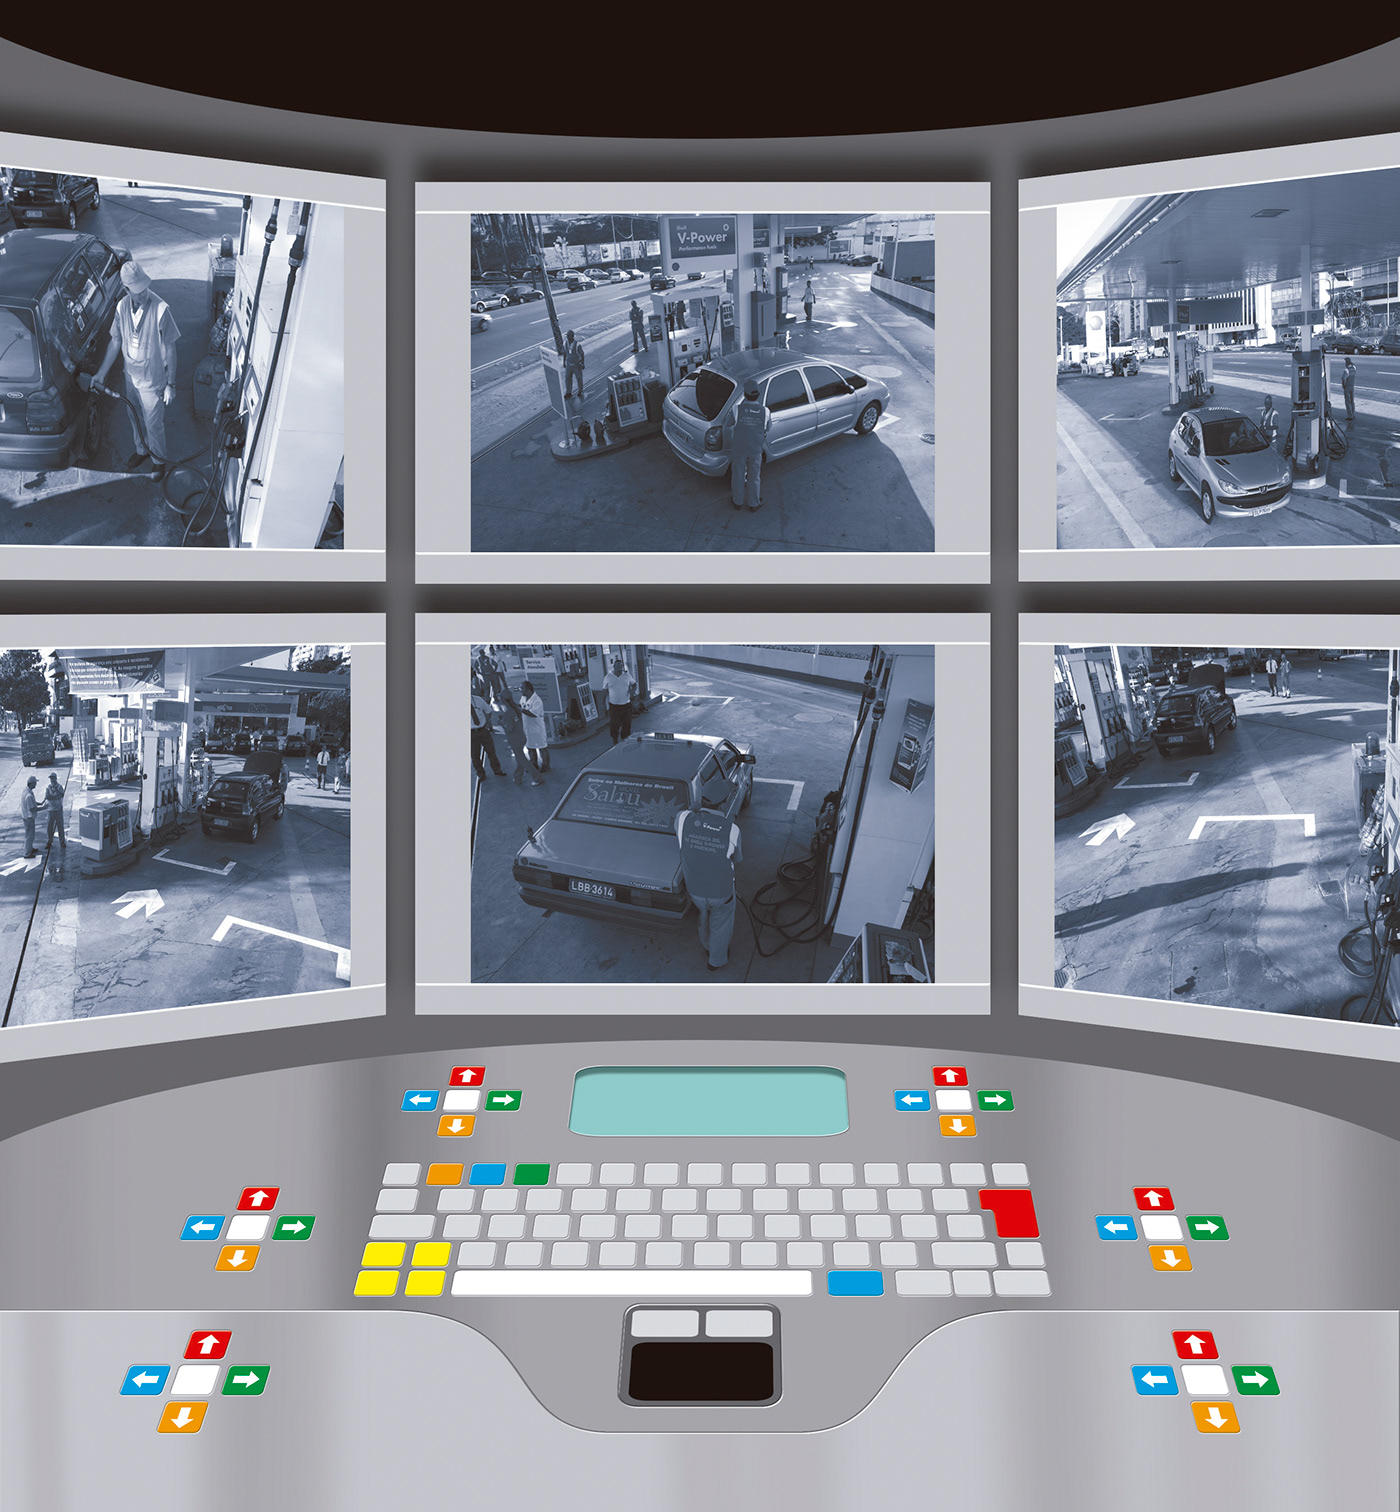 cameras central de segurança gravação joystick mesa monitoramento posto de combustível Segurança teclado tecnologia